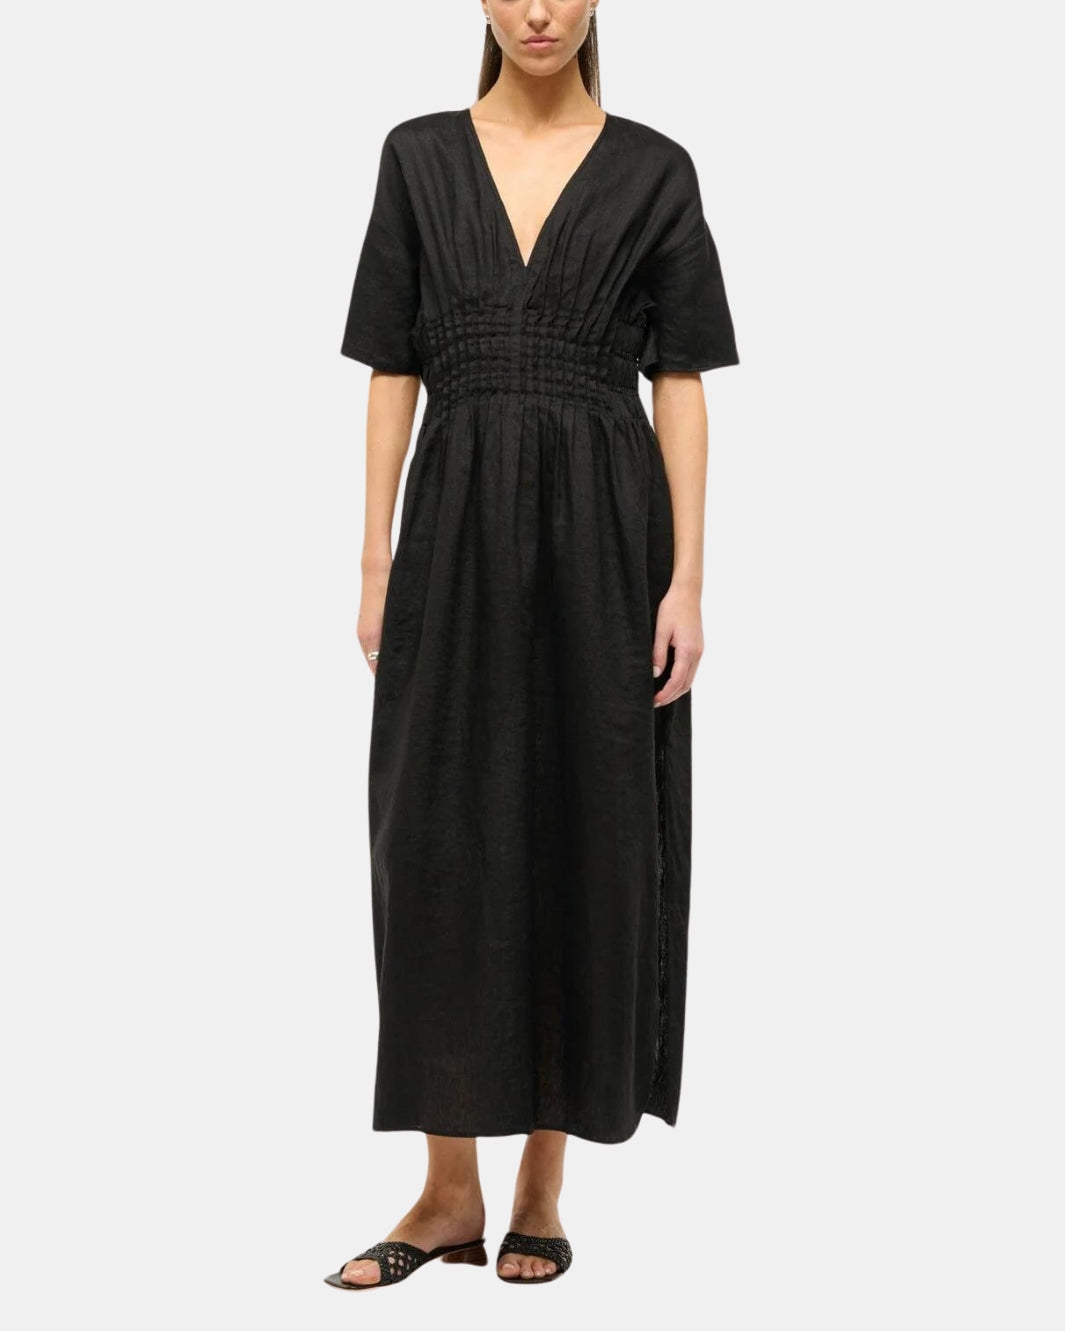 LAURETTA DRESS IN BLACK - Romi Boutique